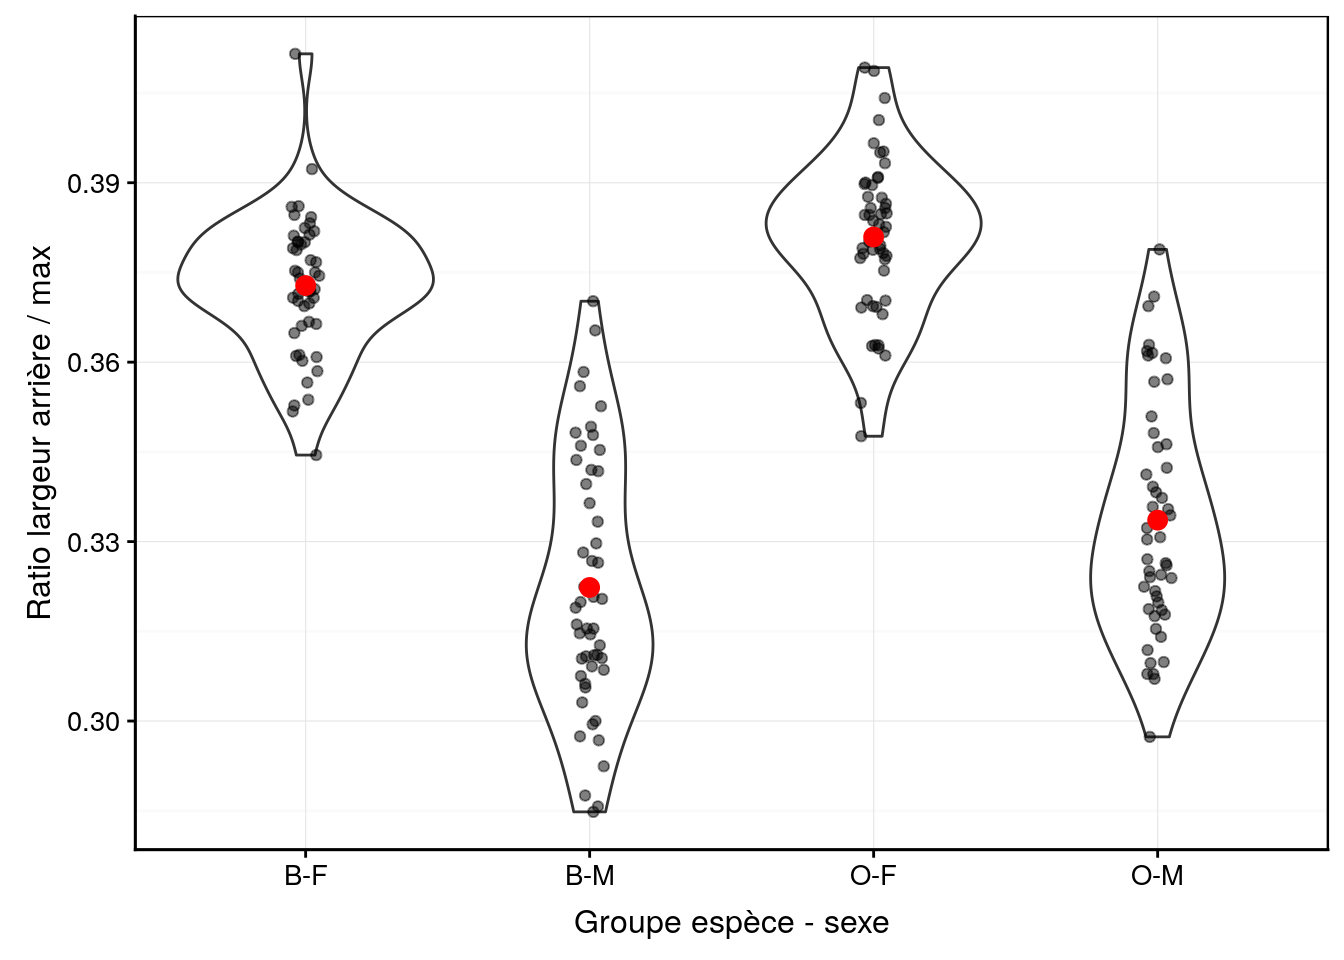 Ratio largeur arrière/largeur max en fonction du groupe de crabes *L. variegatus*. Graphique adéquat pour comparer les moyennes et distributions dans le cas d'un nombre important de répliquat (moyennes en rouge + observations individuelles en noir semi-transparent superposées à des graphiques en violon).